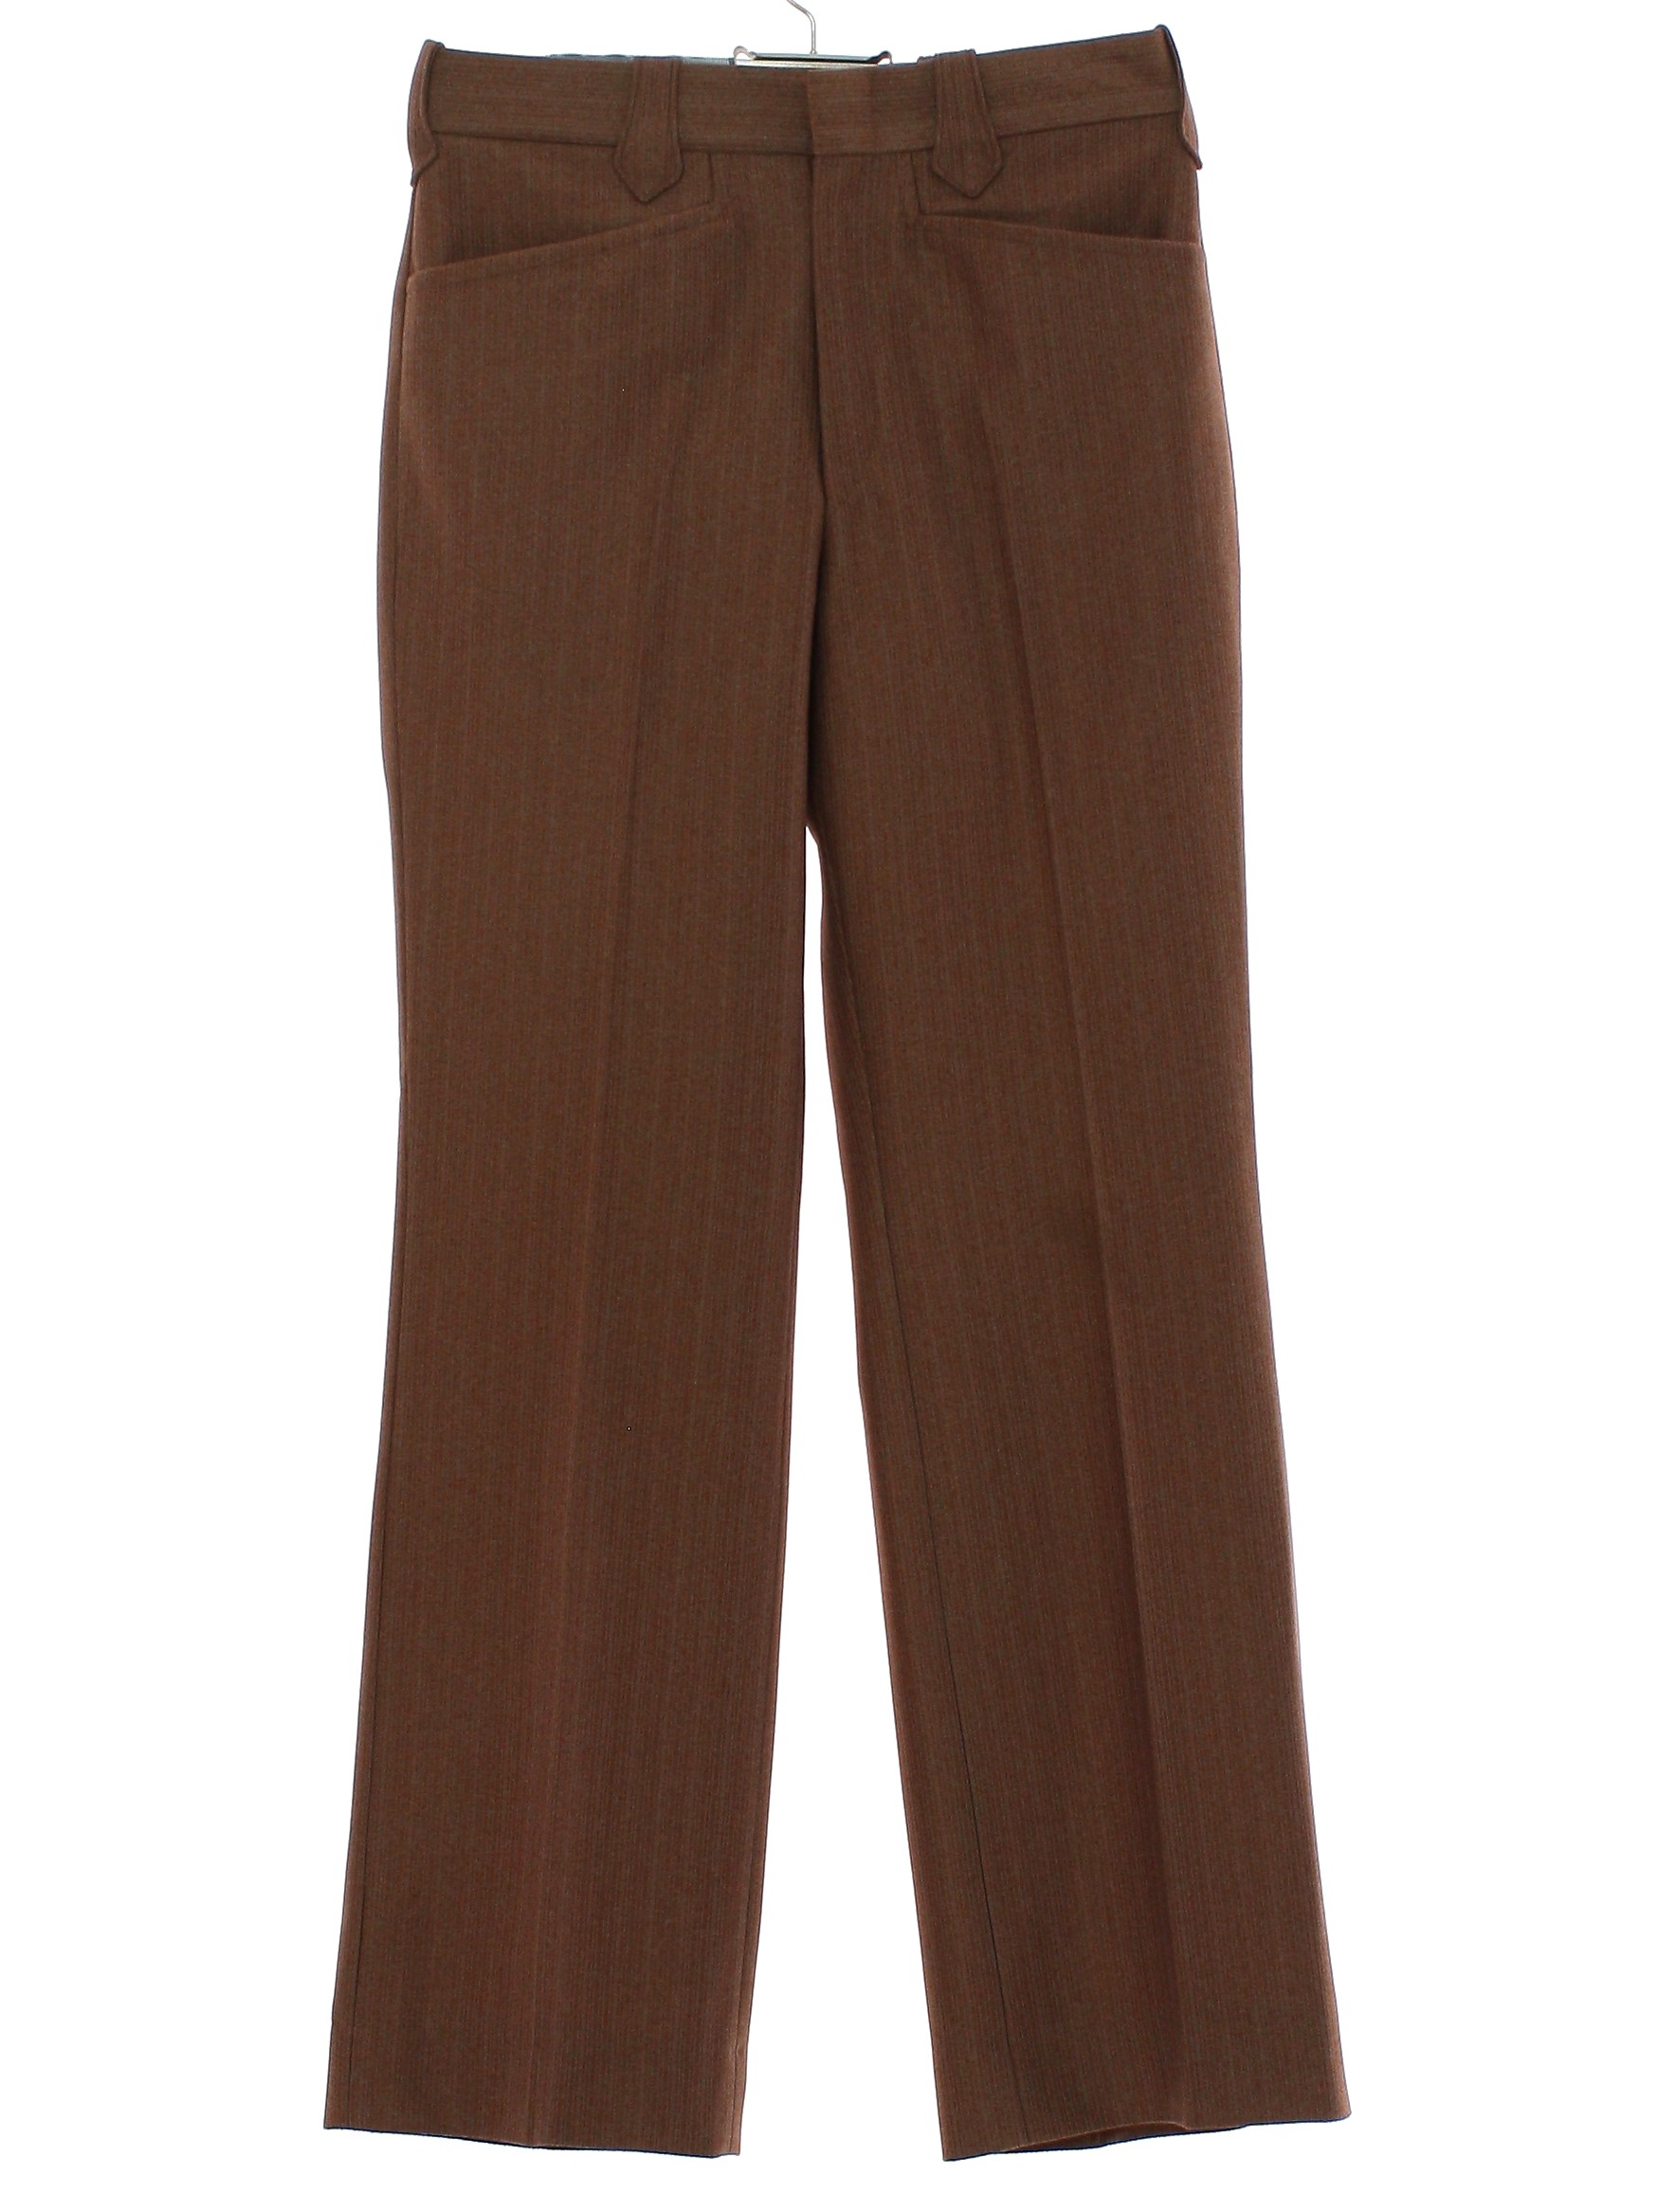 Retro 70s Pants: Late 70s -No Label- Mens light brown subtle vertical ...